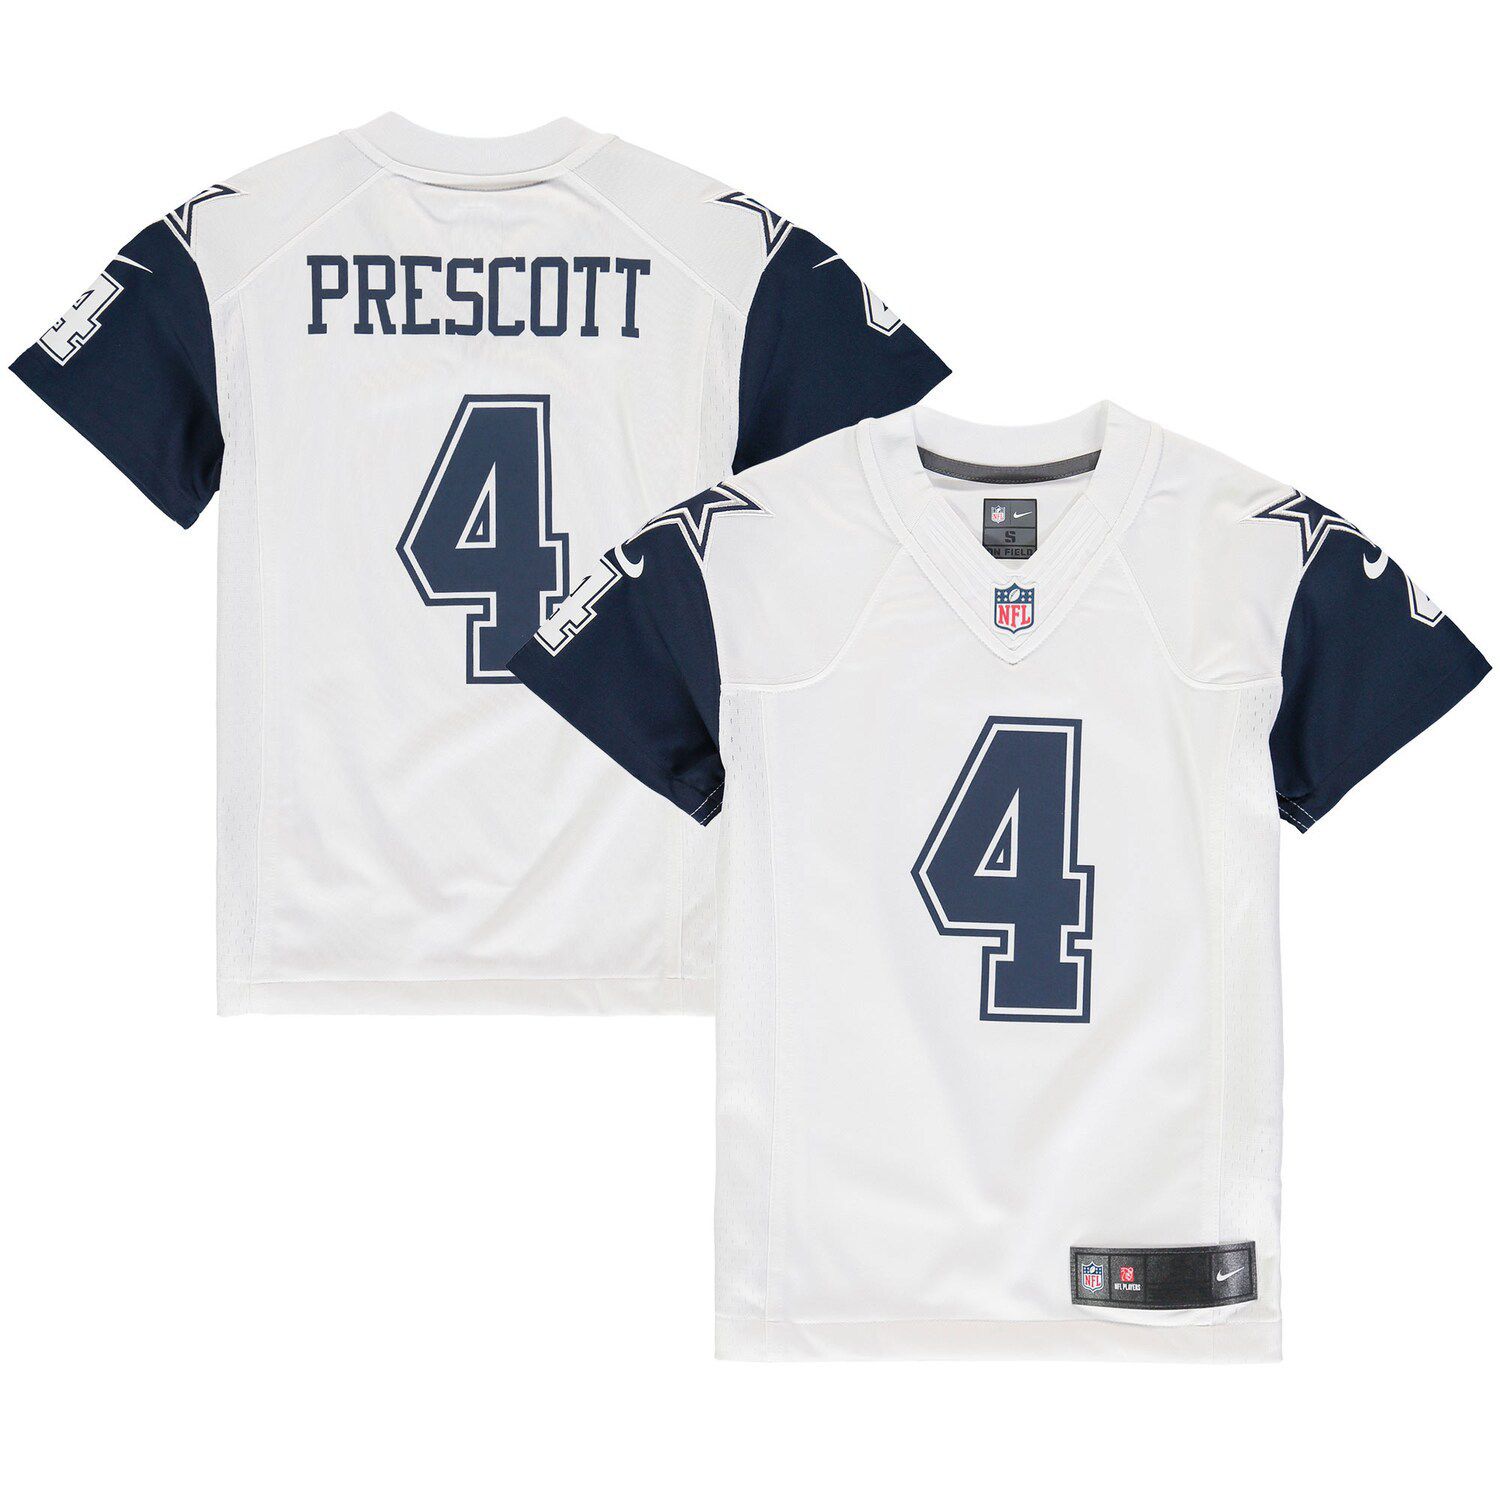 prescott rush jersey